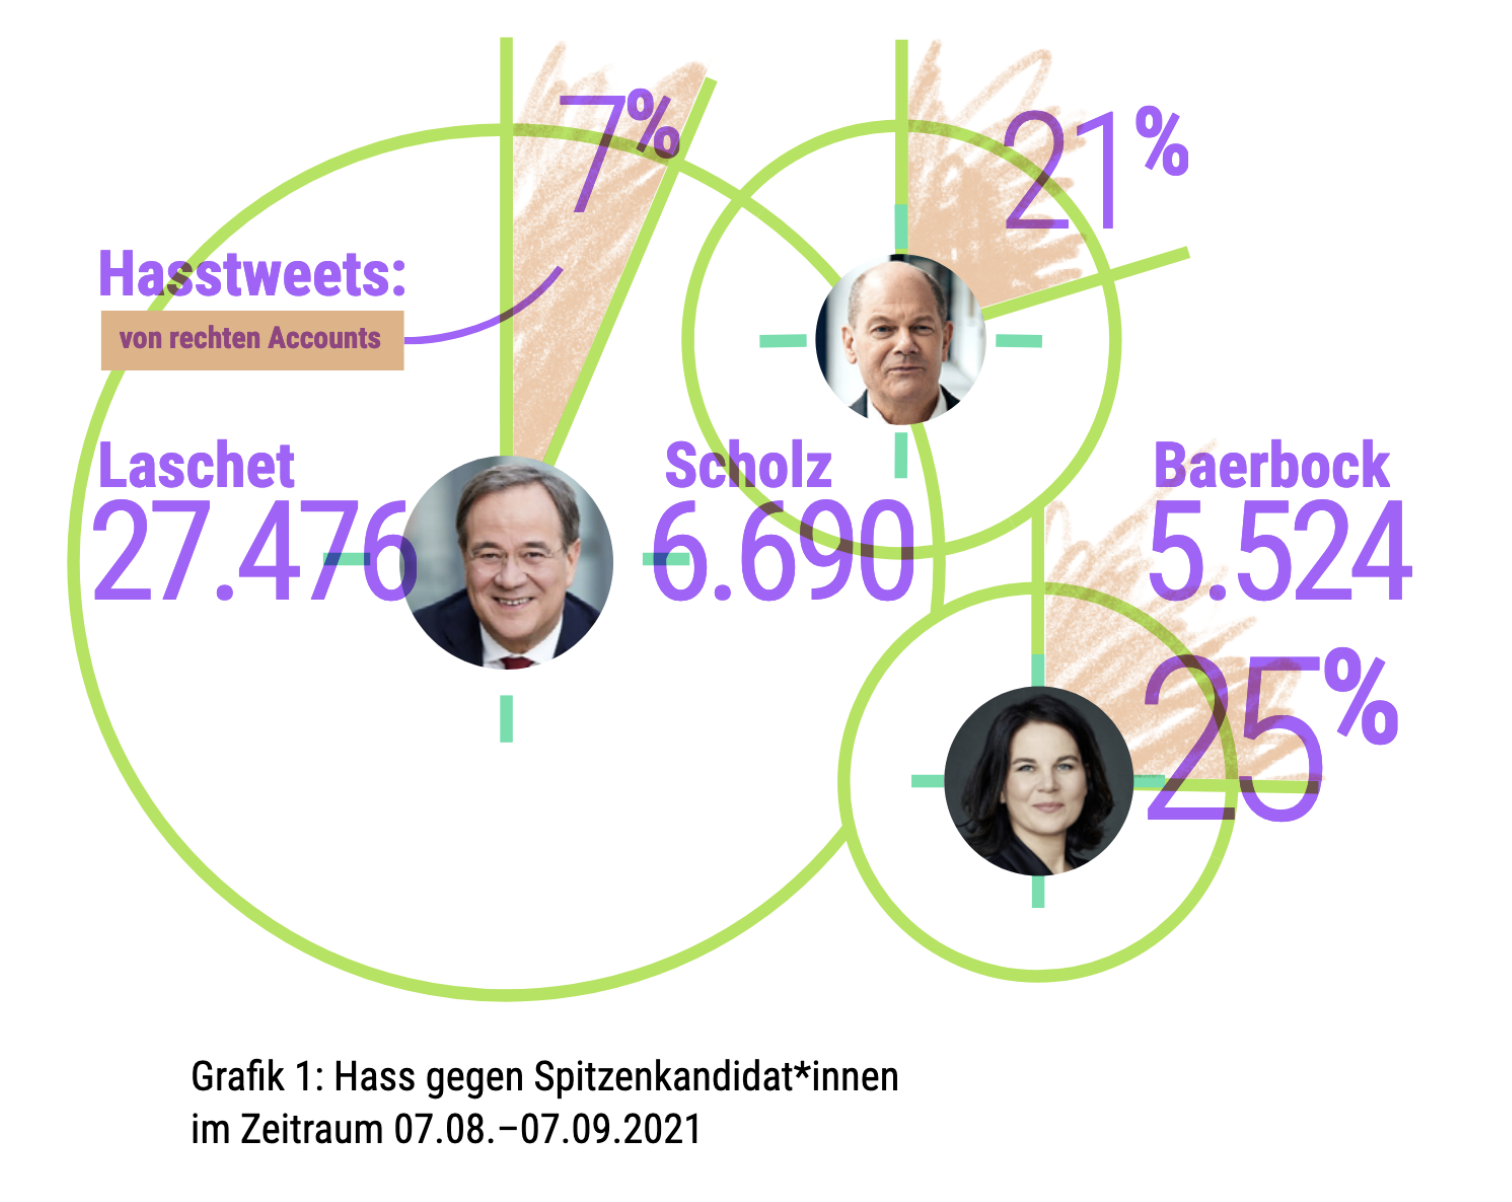 Grafische Darstellung "Hass gegen Spitzenkandidat*innen" aus der HateAid-Pressemitteilung, mit den Zahlen der problematischen Kommentare als Kreisen.